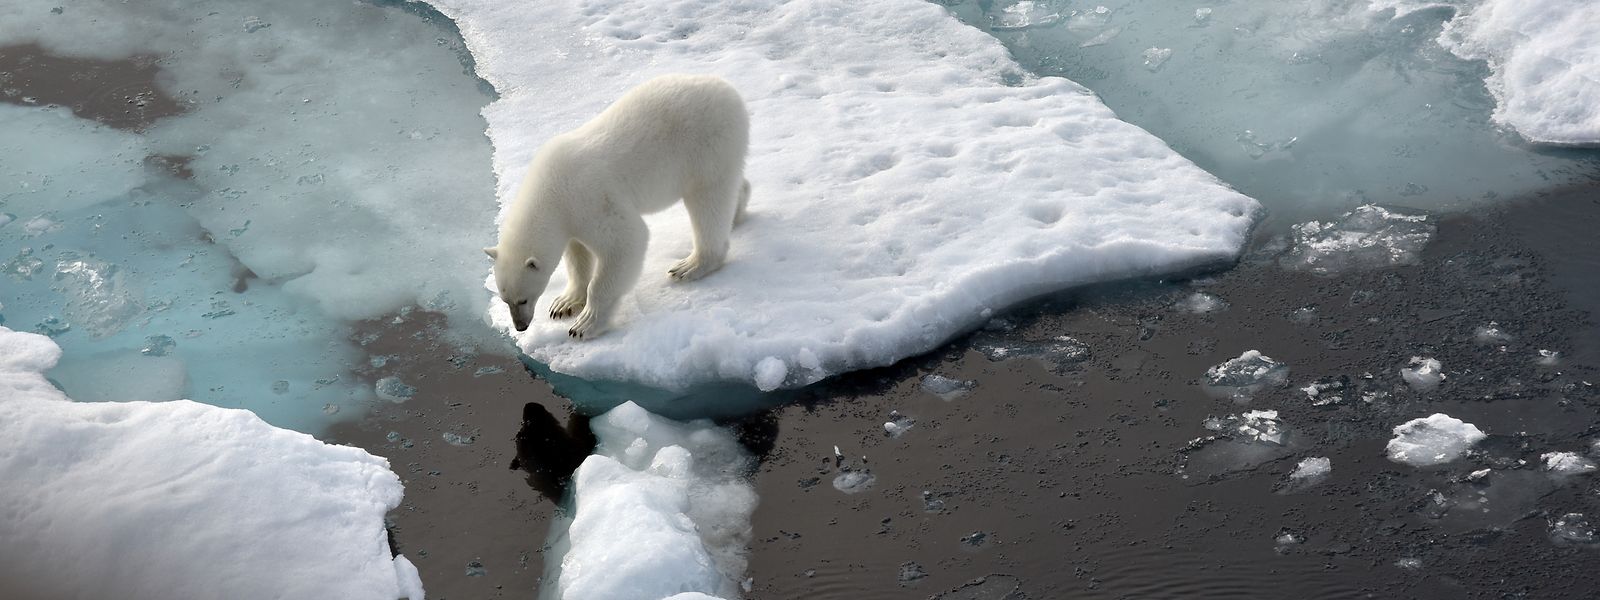 Nicht nur die Eisbären leiden: Der Weltklimarat gibt in seinem jüngsten Bericht zu bedenken, dass Wetterextreme mittlerweile die Hälfte der Menschheit bedrohen.